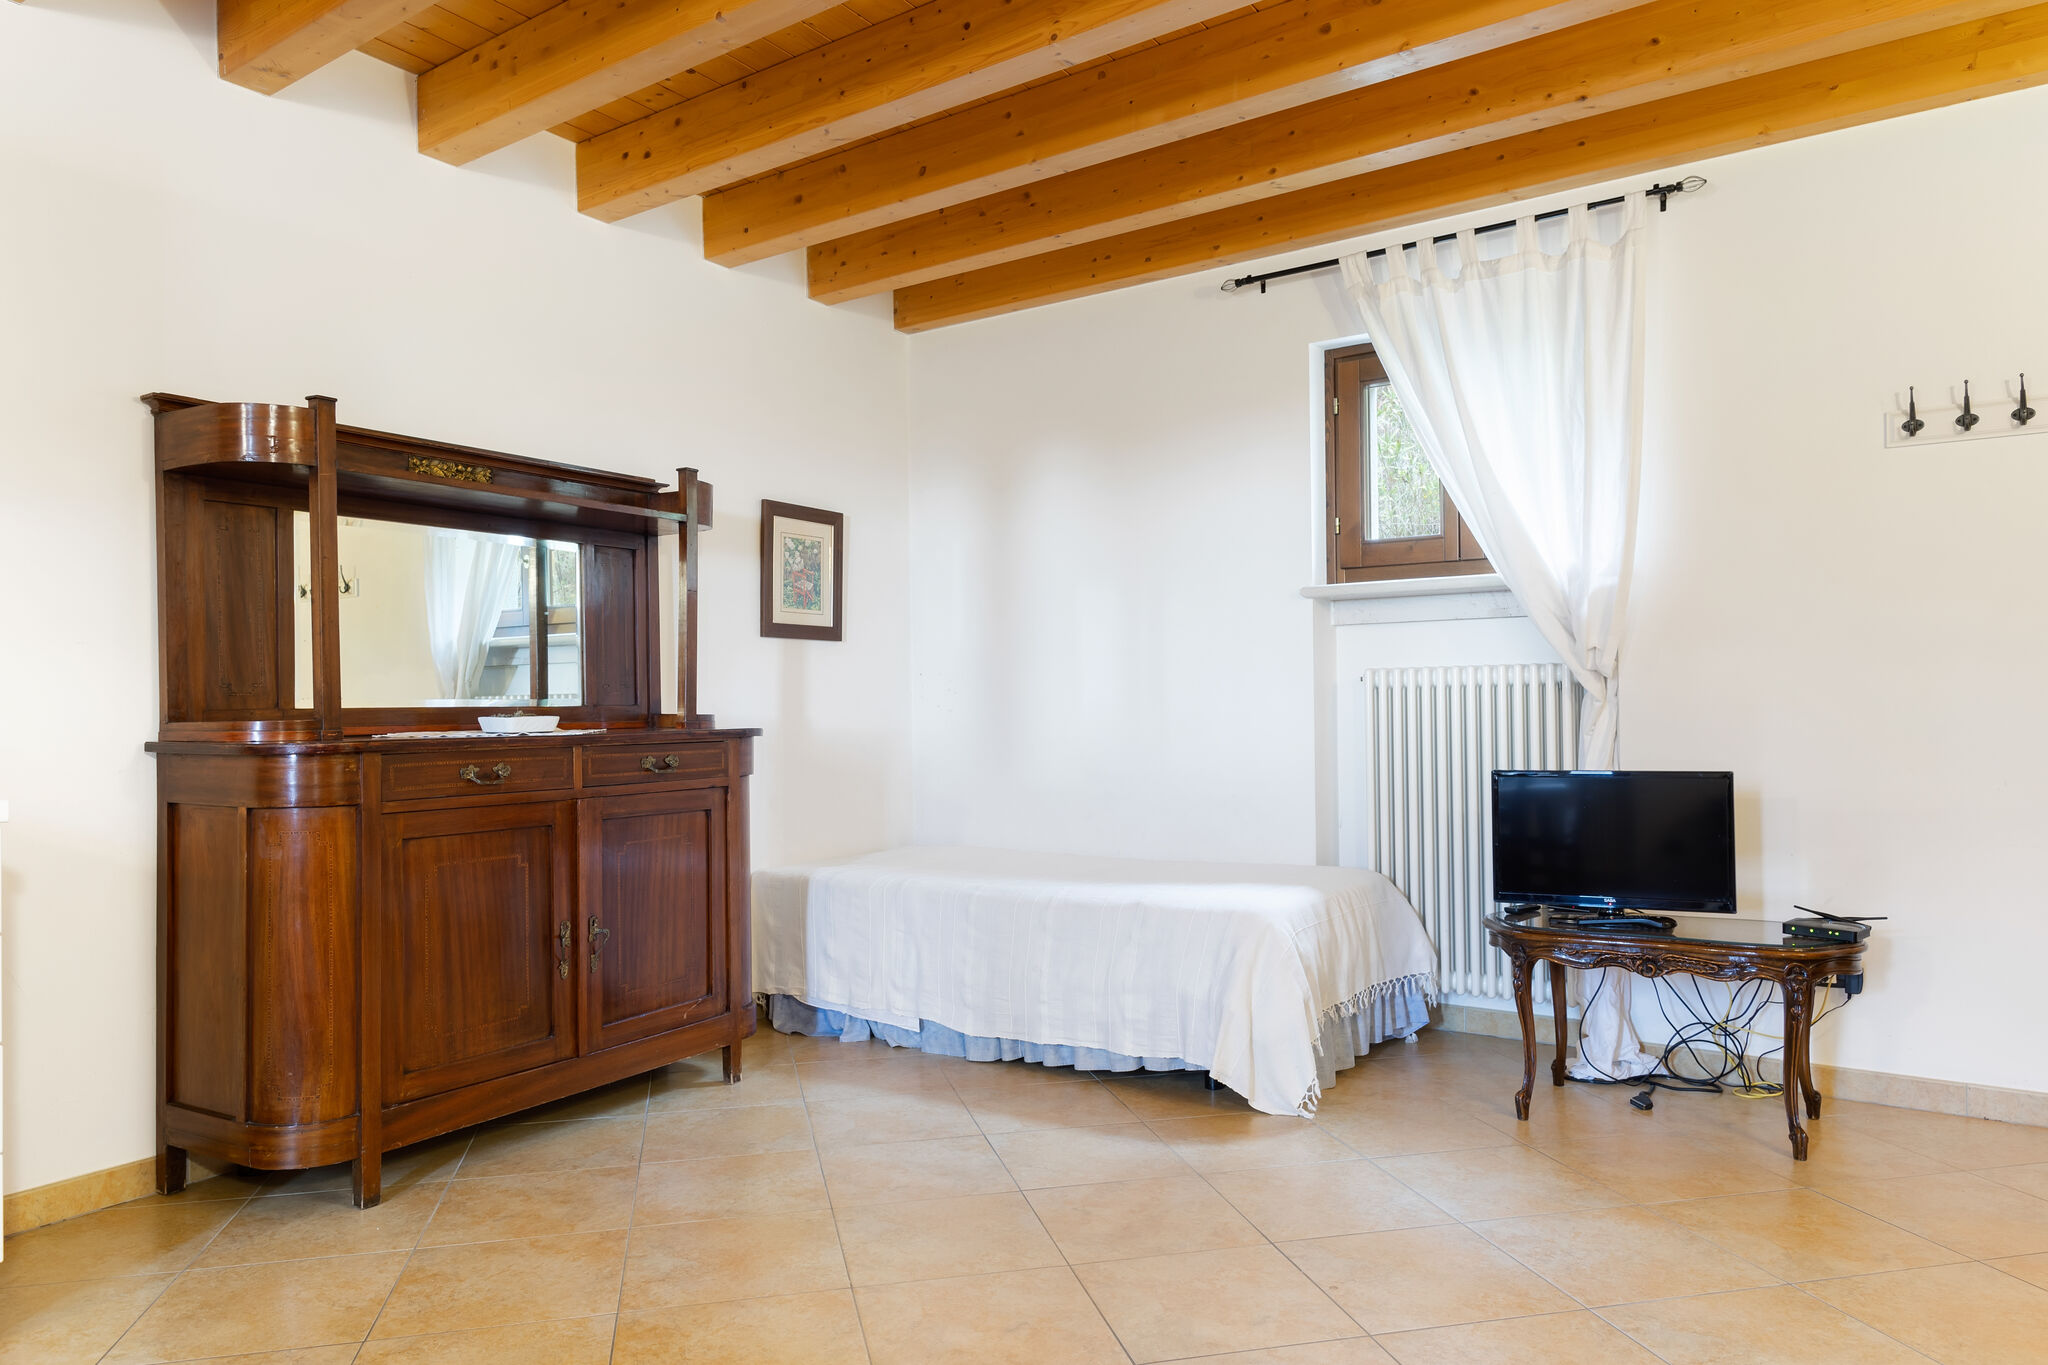 Aantrekkelijk landhuis in Caprino Veronese bij het Gardameer